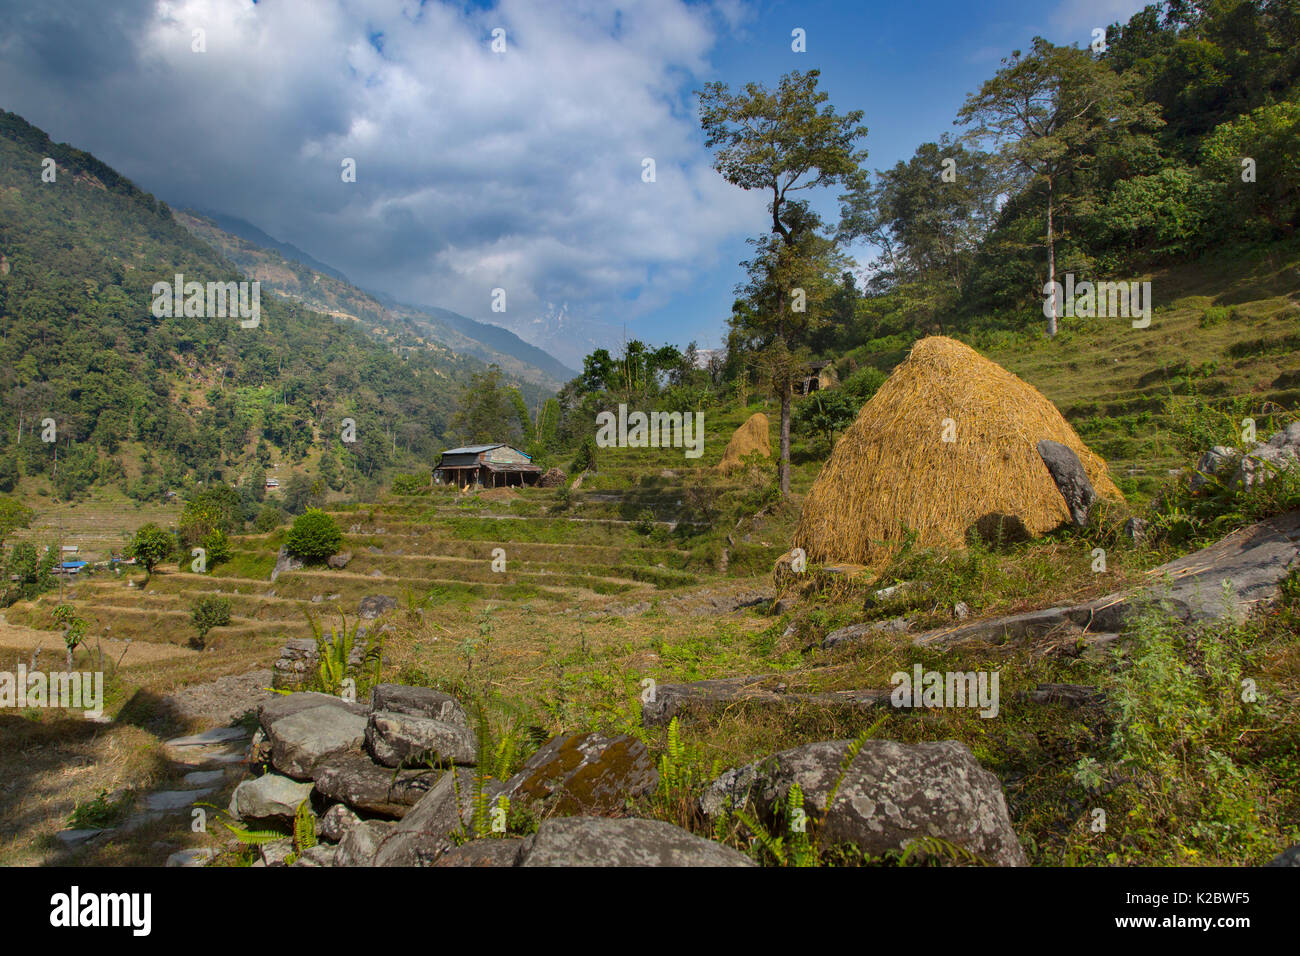 Essiccazione di paglia sulla collina di terrazze, vicino al villaggio di montagna di Ghandruk. Modi Khola Valley, Himalaya, Nepal. Novembre 2014. Foto Stock